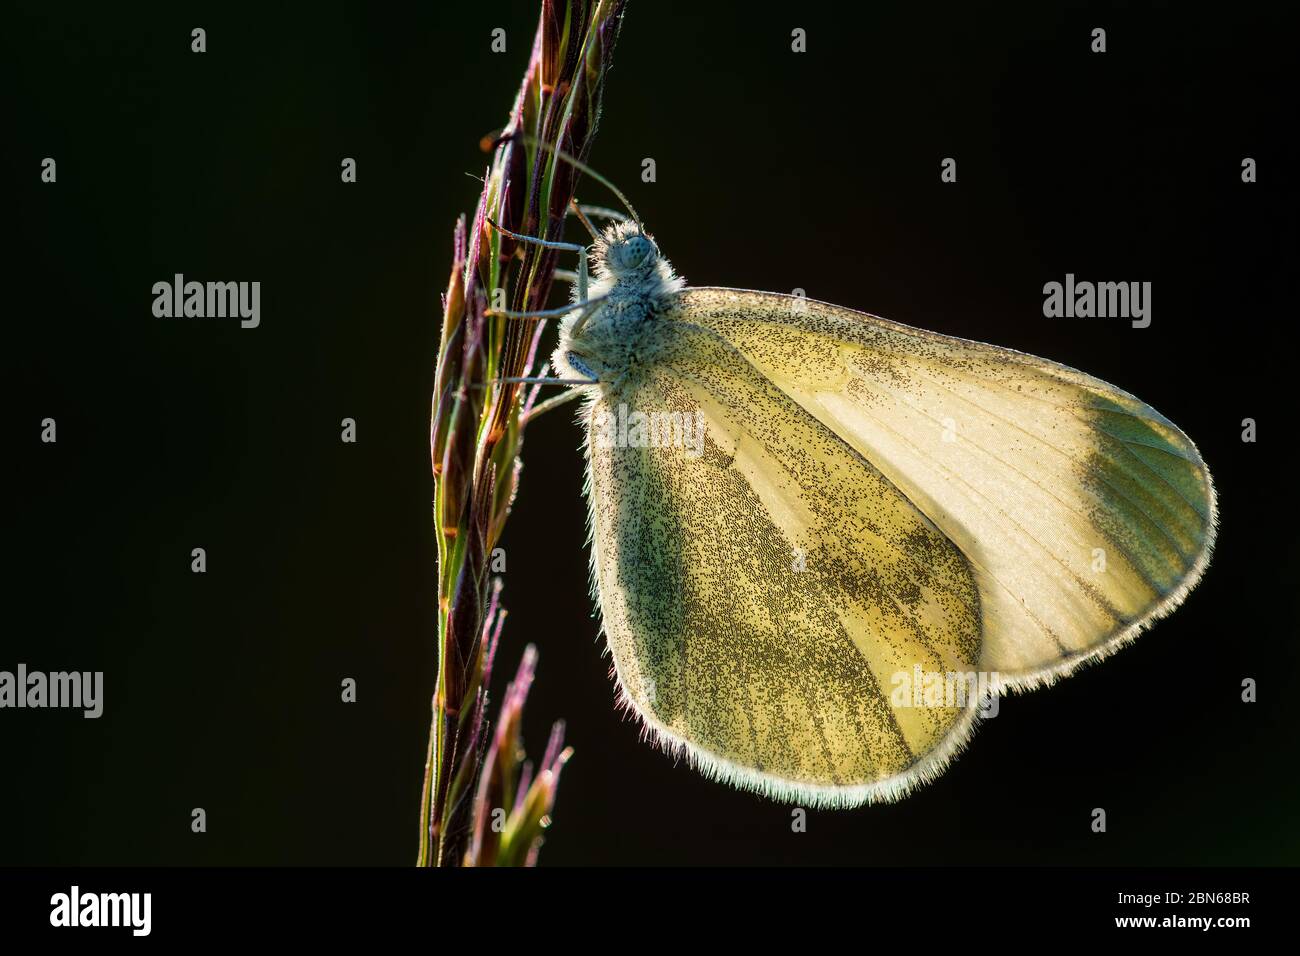 Legno Criptico Bianco - Leptidea juvernica, piccola farfalla bianca comune da prati e giardini europei, Zlin, Repubblica Ceca. Foto Stock